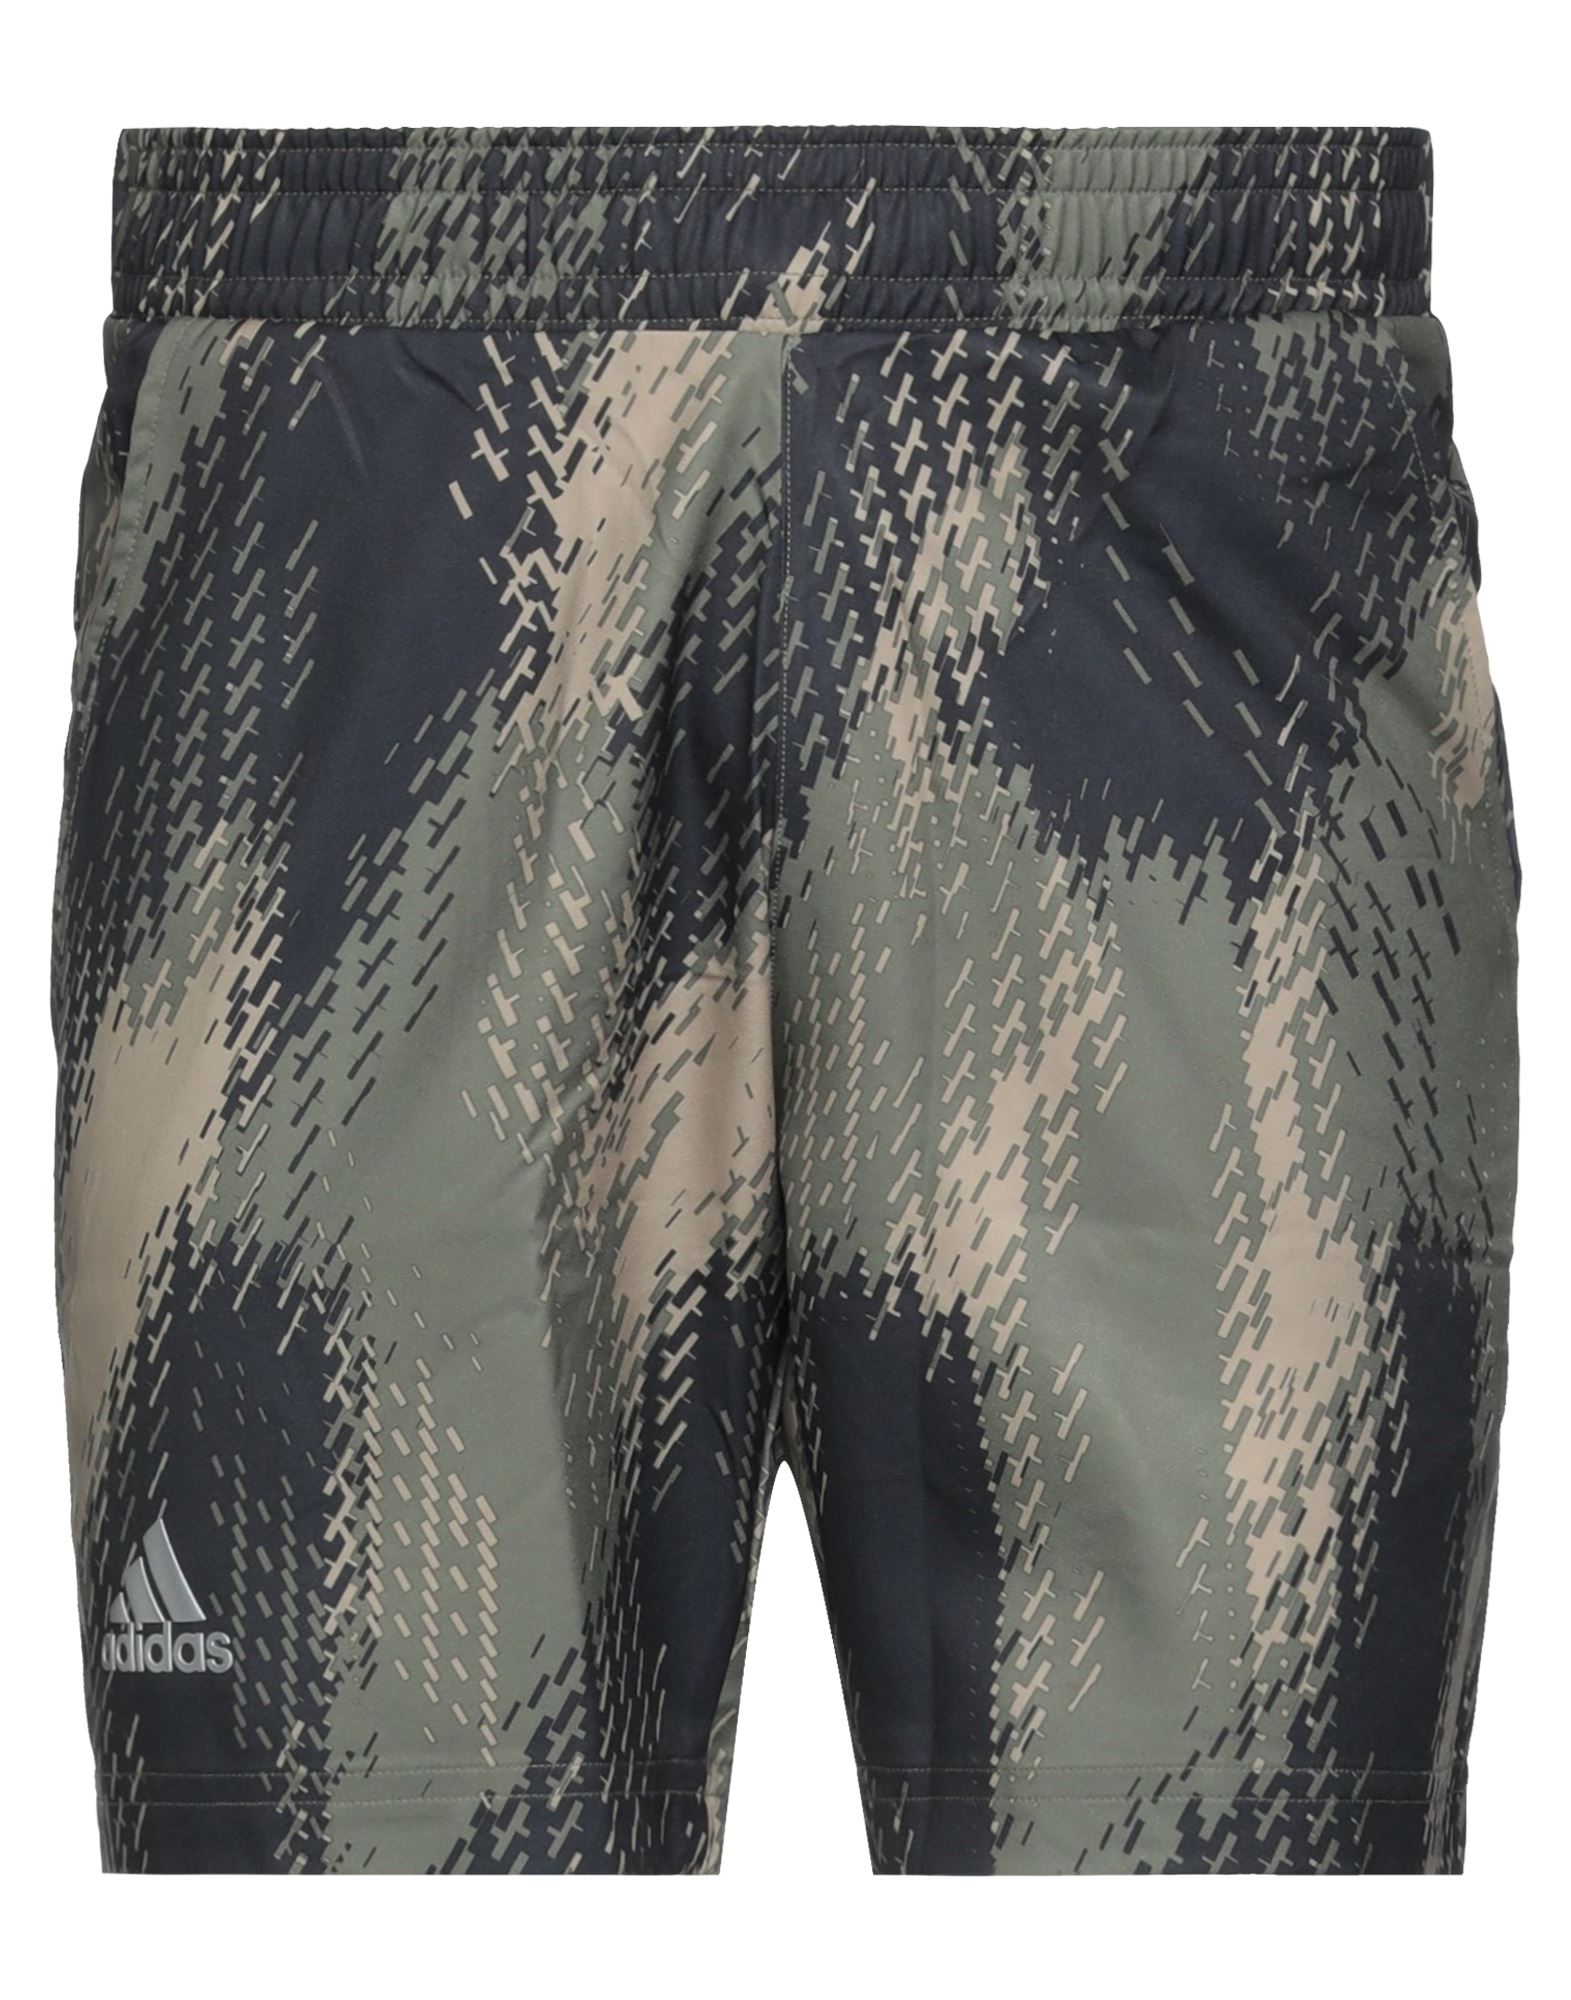 Adidas Originals Adidas Man Shorts & Bermuda Shorts Military Green Size Xl Recycled Polyester